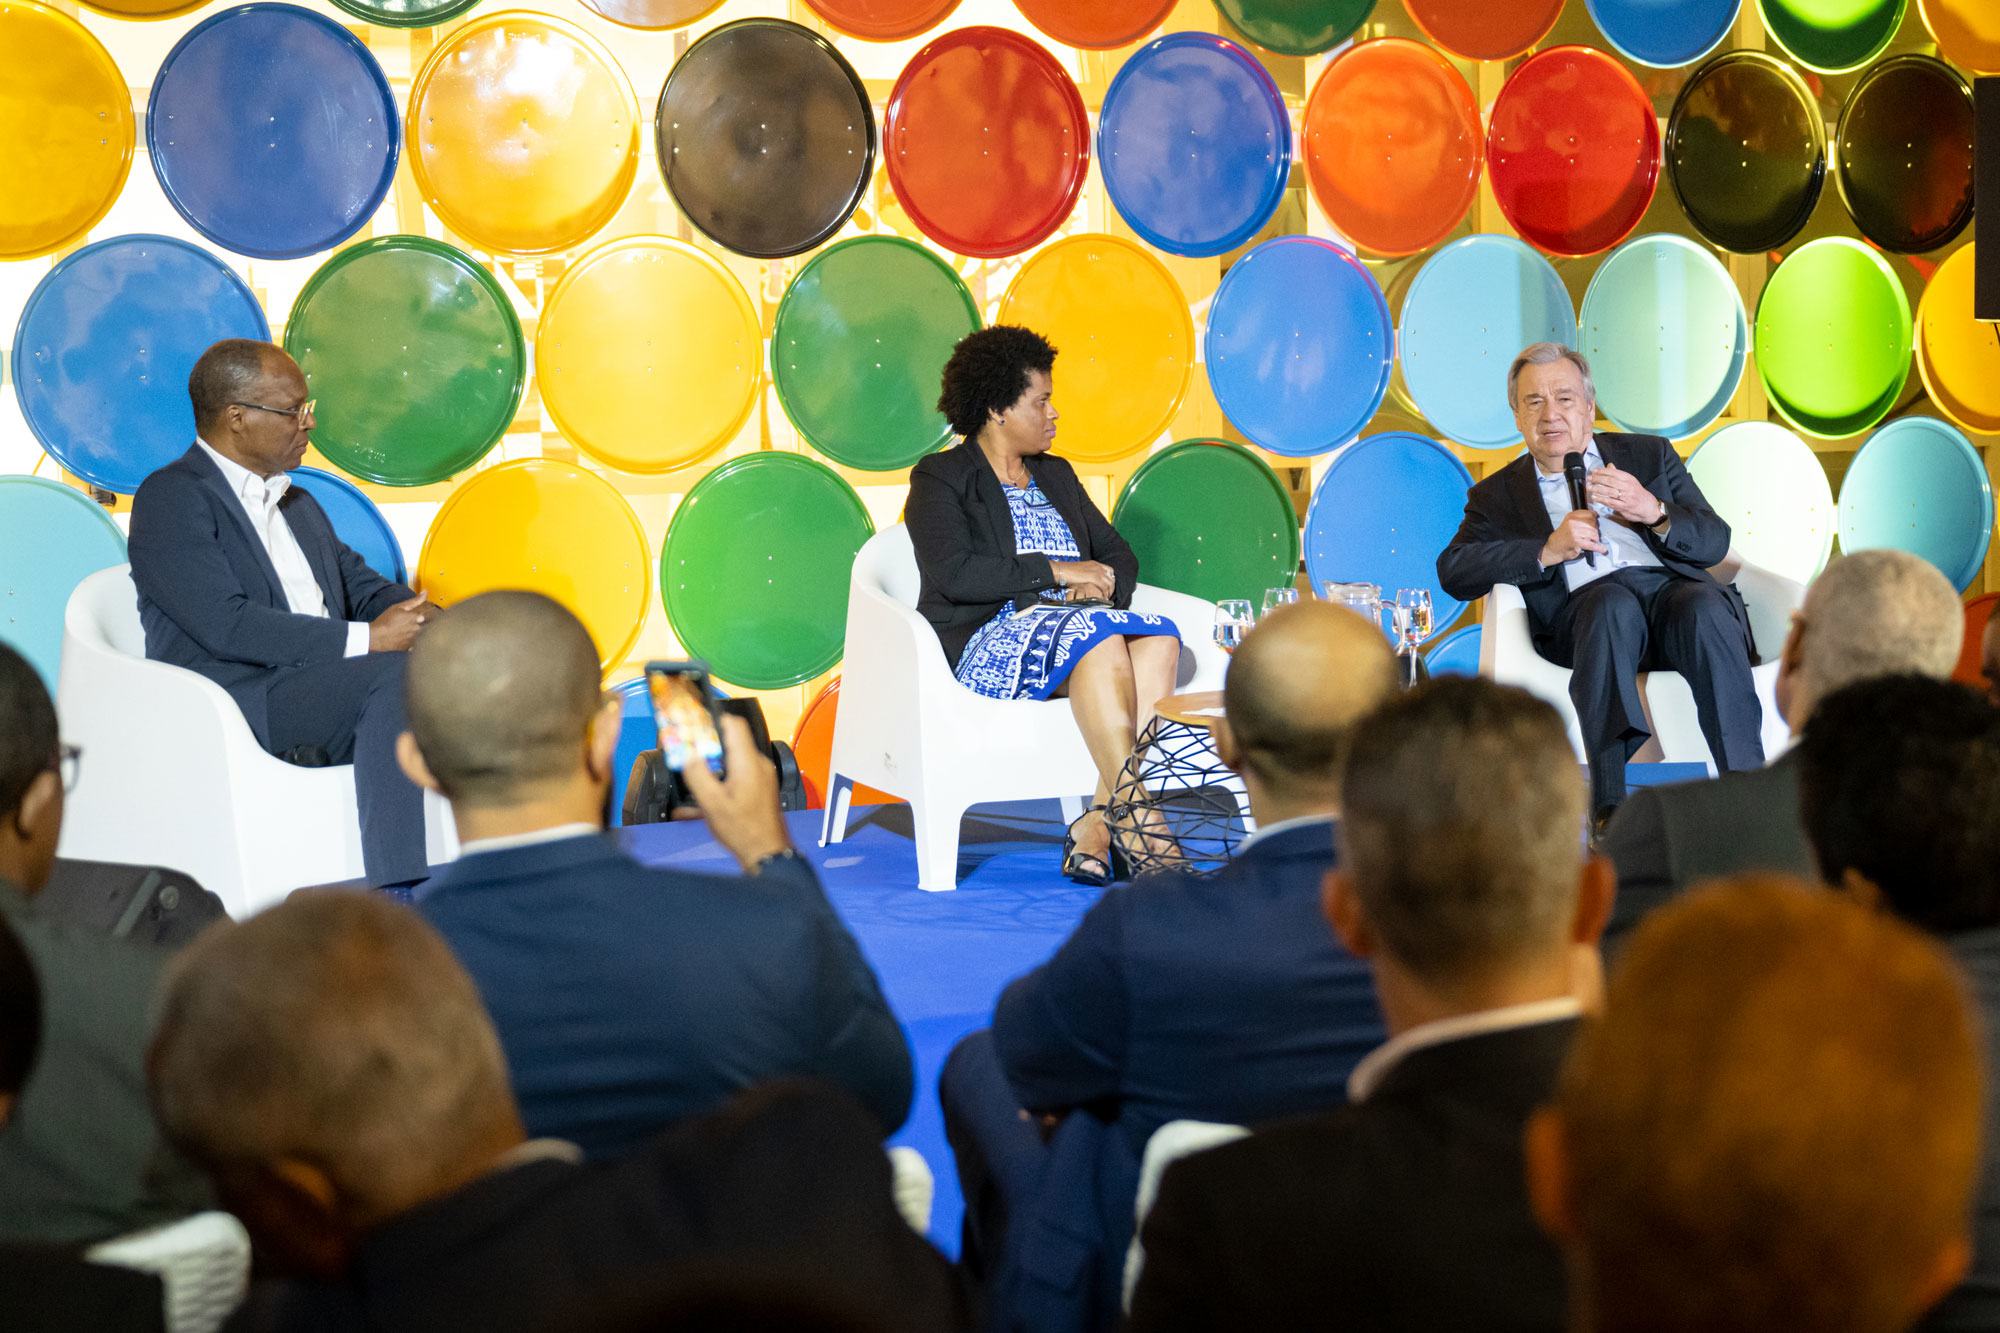 الأمين العام للأمم المتحدة أنطونيو غوتيريش يشارك في سلسلة نقاشات مع رئيس وزراء كابو فيردي خوسيه يوليسيس كورييا إي سيلفا.